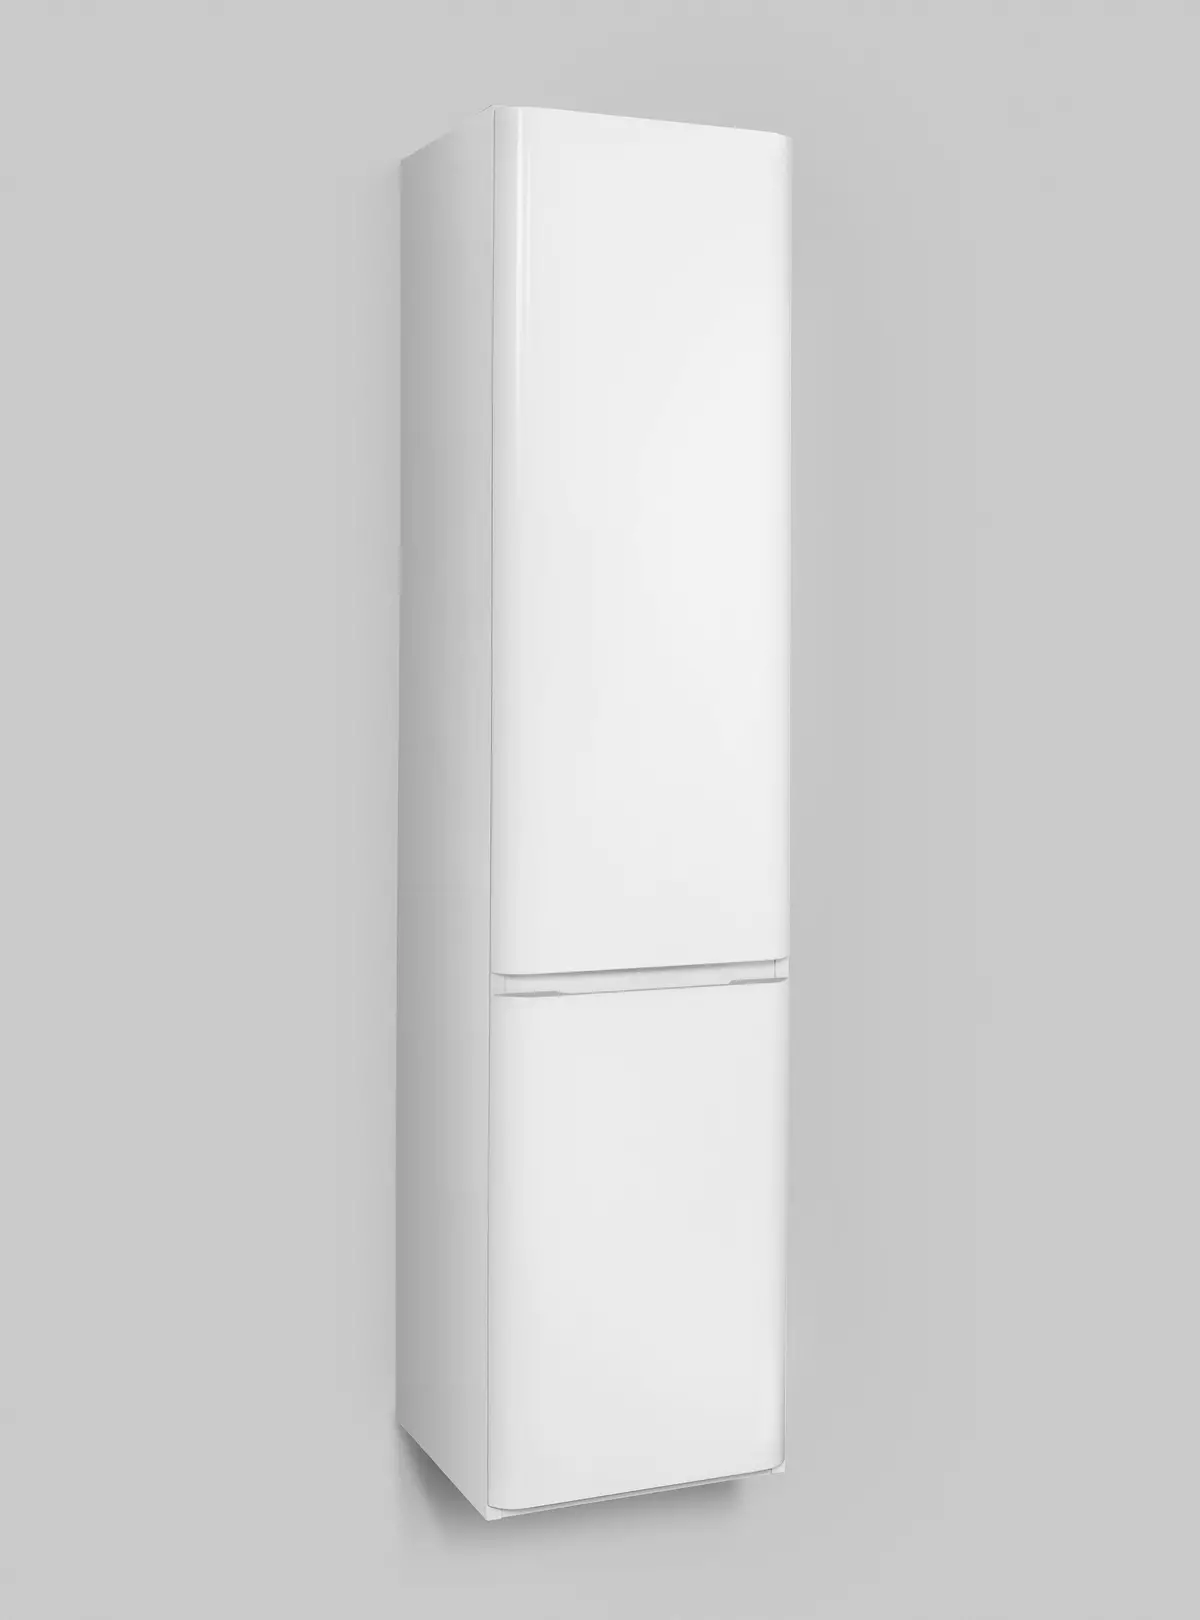 Ołówki z koszem do pościeli w łazience: szafka kątowa, zawieszona i zewnętrzna, 25 cm i 35 cm, 60 cm i inne rozmiary 10403_23